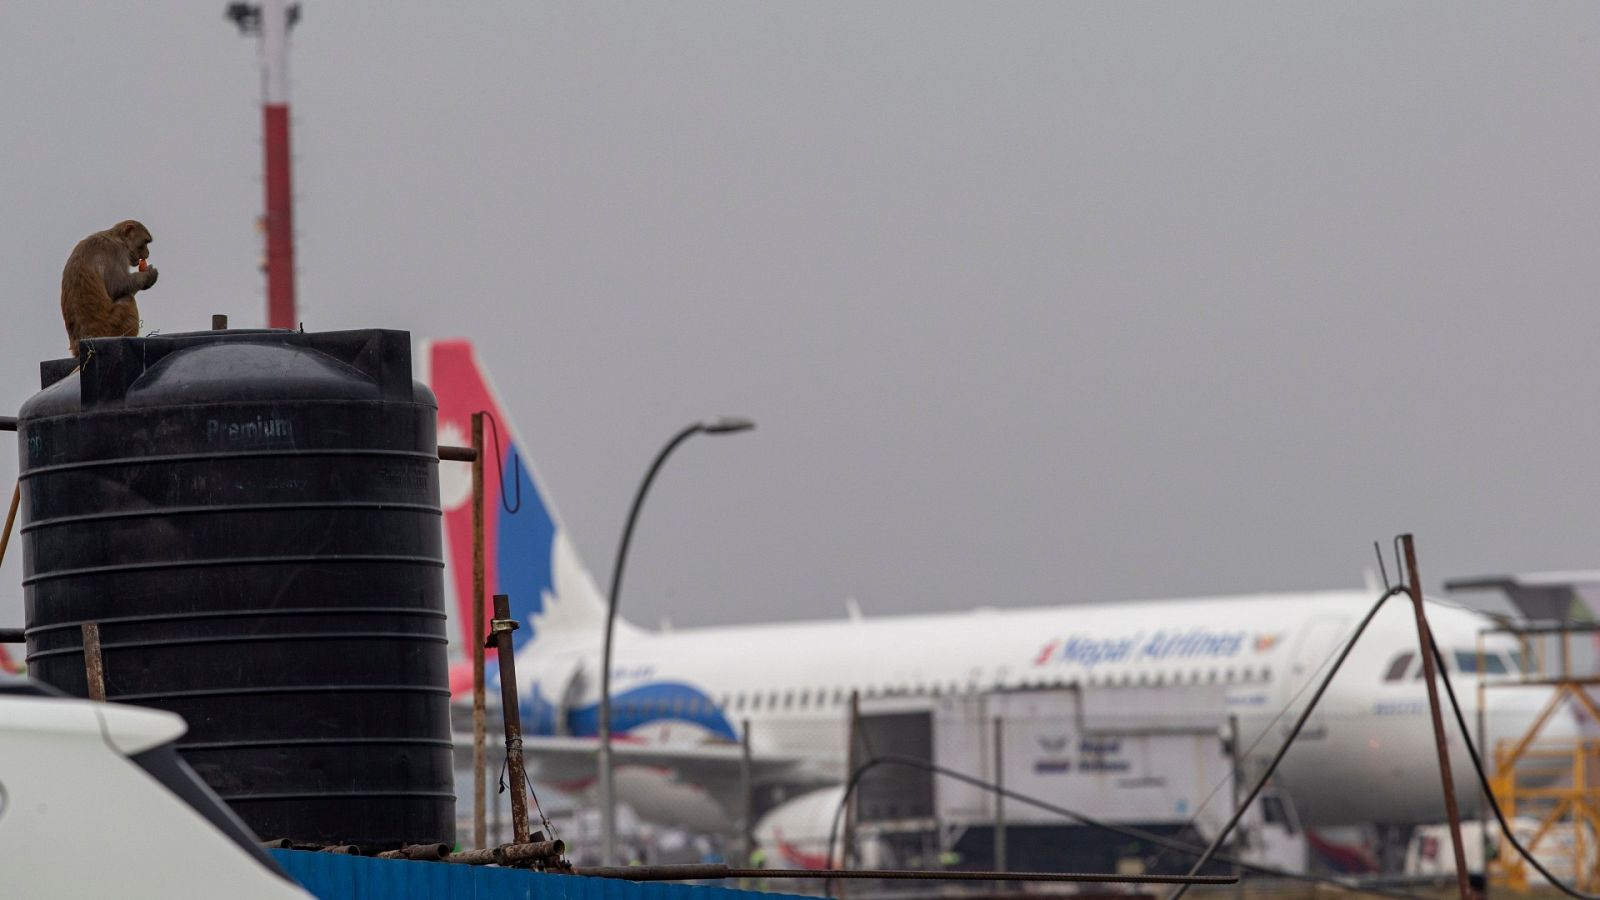 Imagen del aeropuerto de Nepal con un avión de fondo